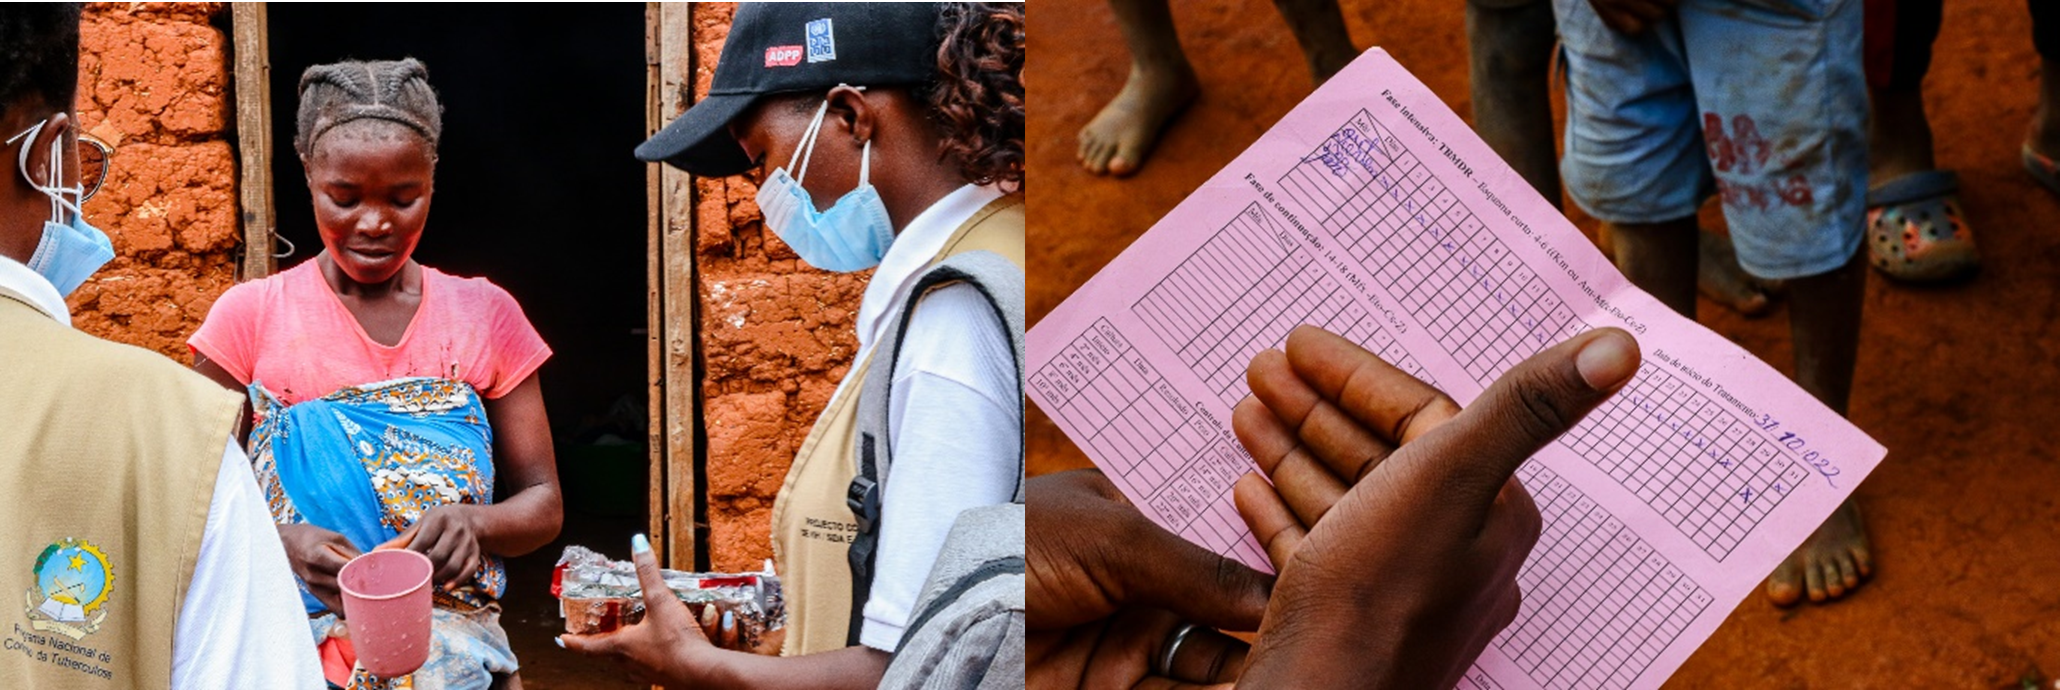 Os técnicos de saúde comunitária entregam medicamentos para a tuberculose e realizam visitas ao domicílio para apoiar os doentes durante o seu tratamento. Fotos: PNUD Angola